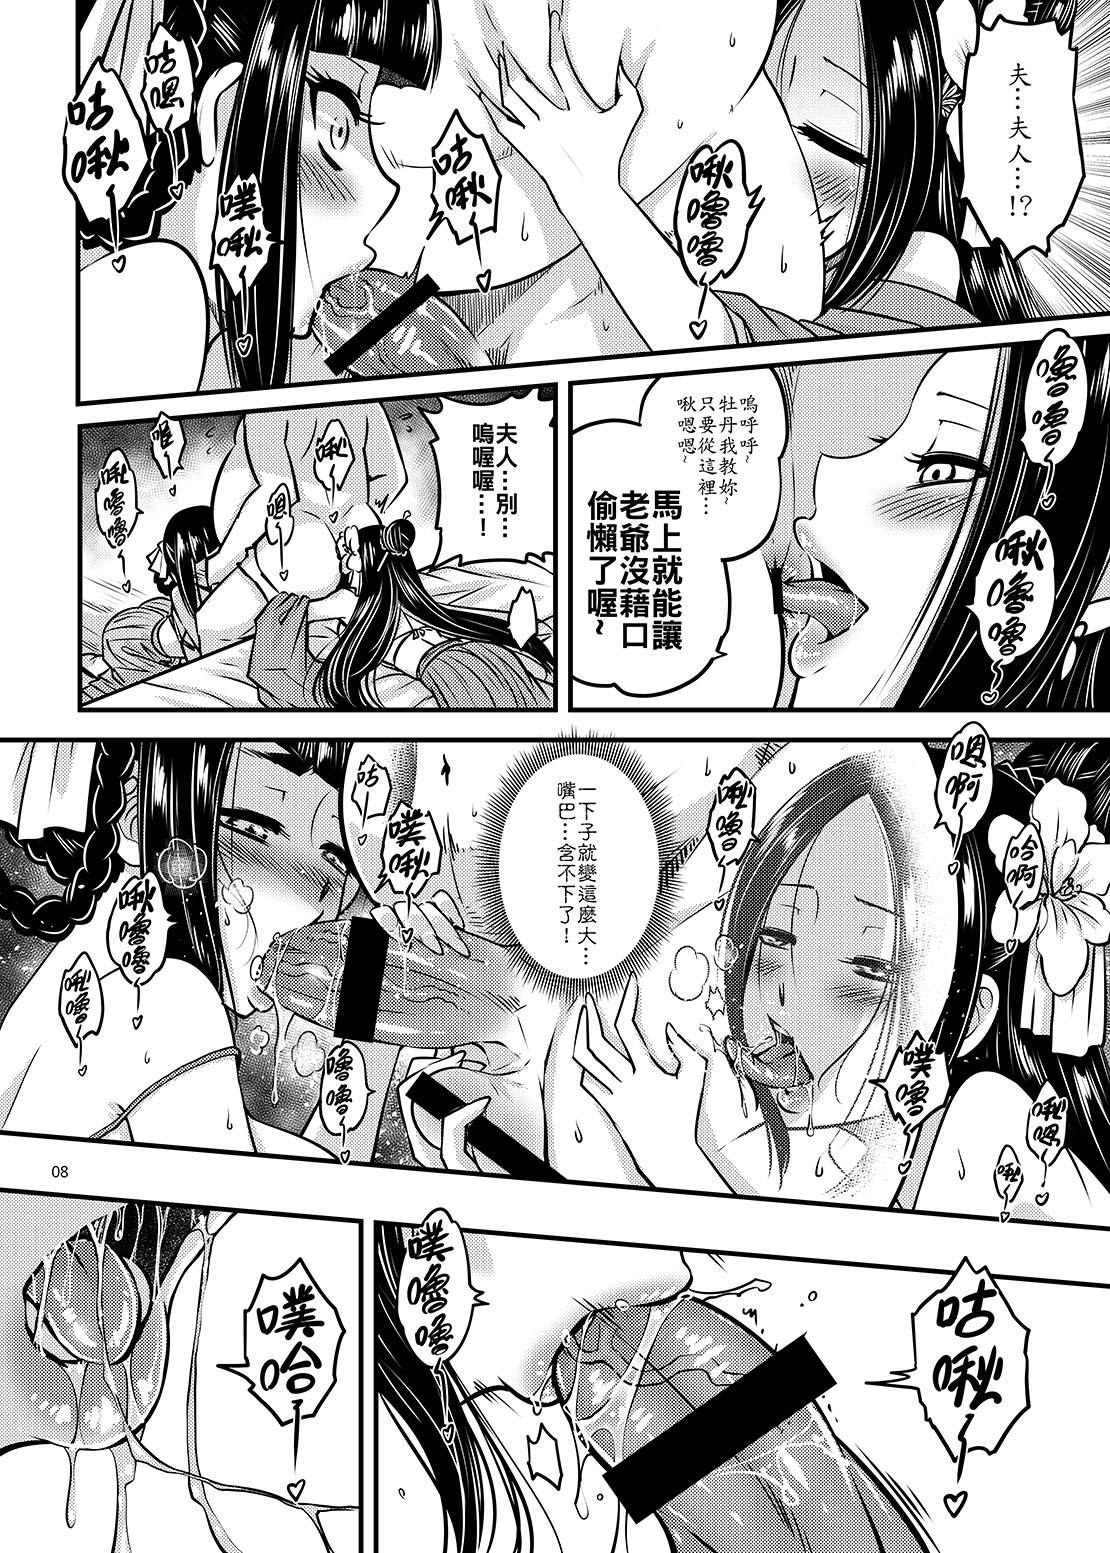 Pasivo Hyakkasou2《壮絶!海棠夫人の伝説》 - Original Old Man - Page 9